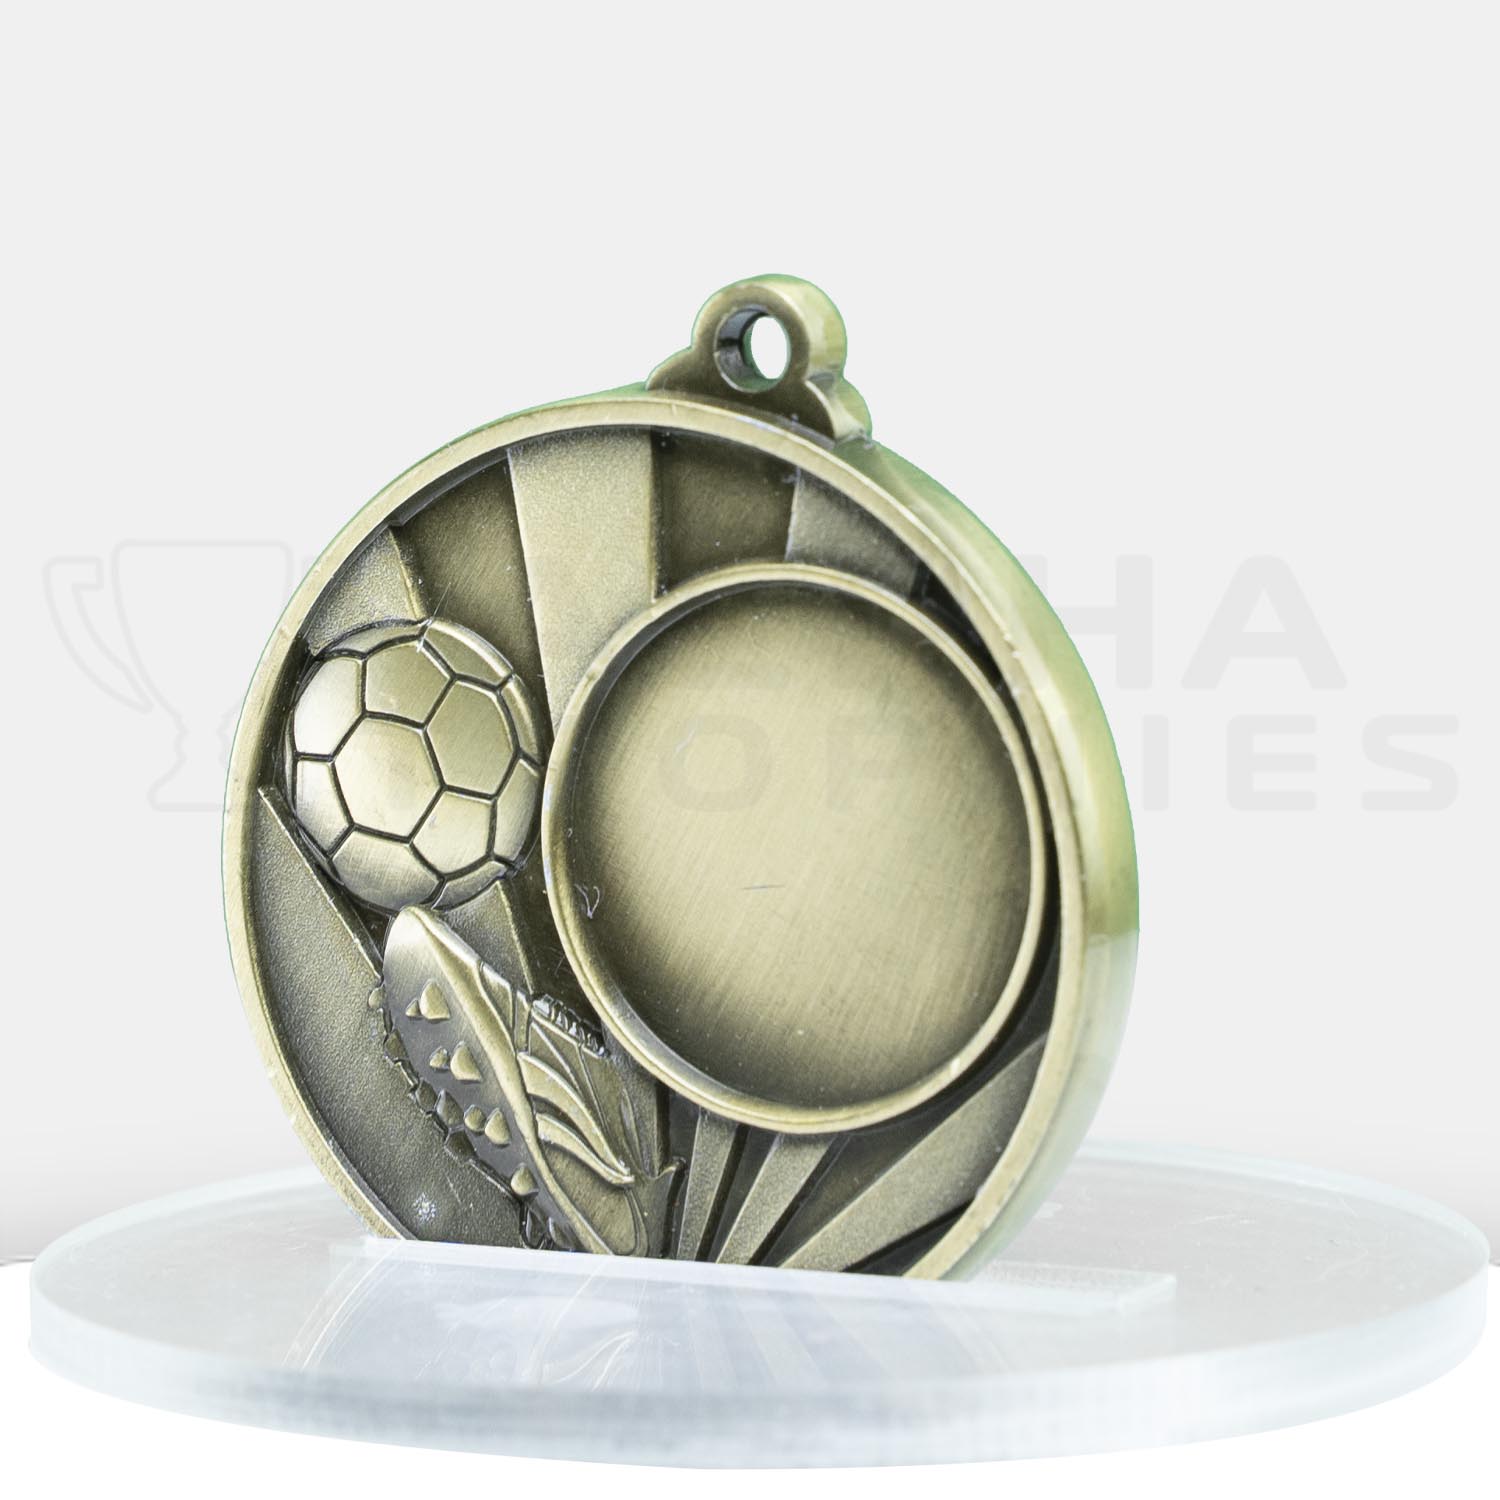 sunrise-medal-football-25mm-insert-gold-1076c-9g-side